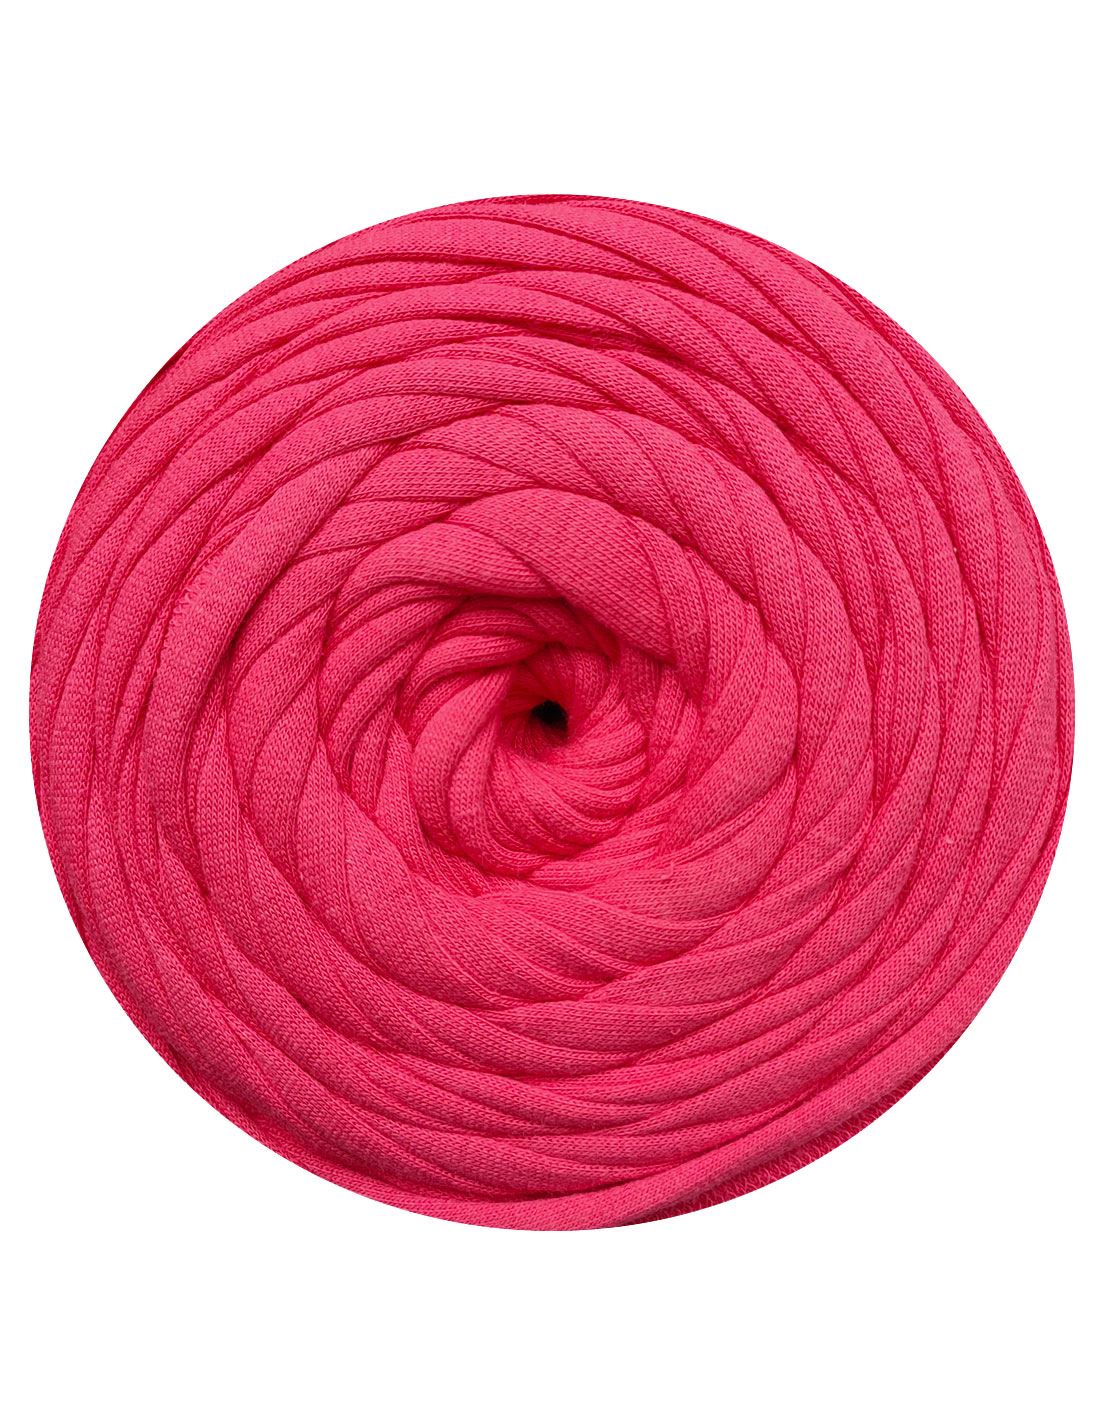 Punch pink t-shirt yarn by Rescue Yarn (100-120m)